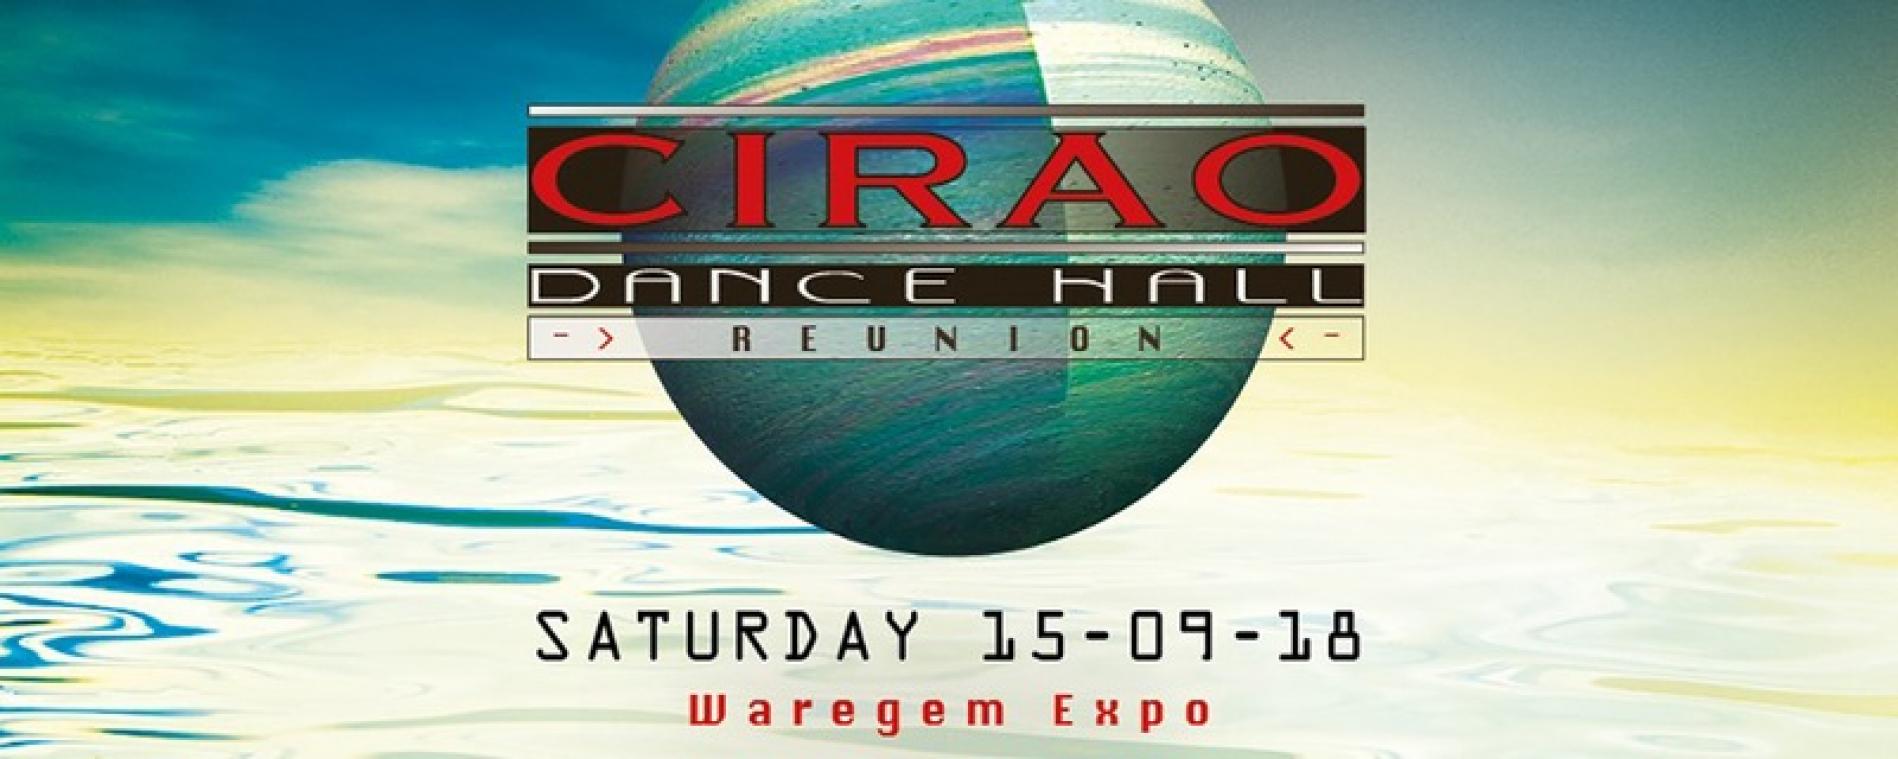 Win tickets voor Cirao Dance Hall Reunion !